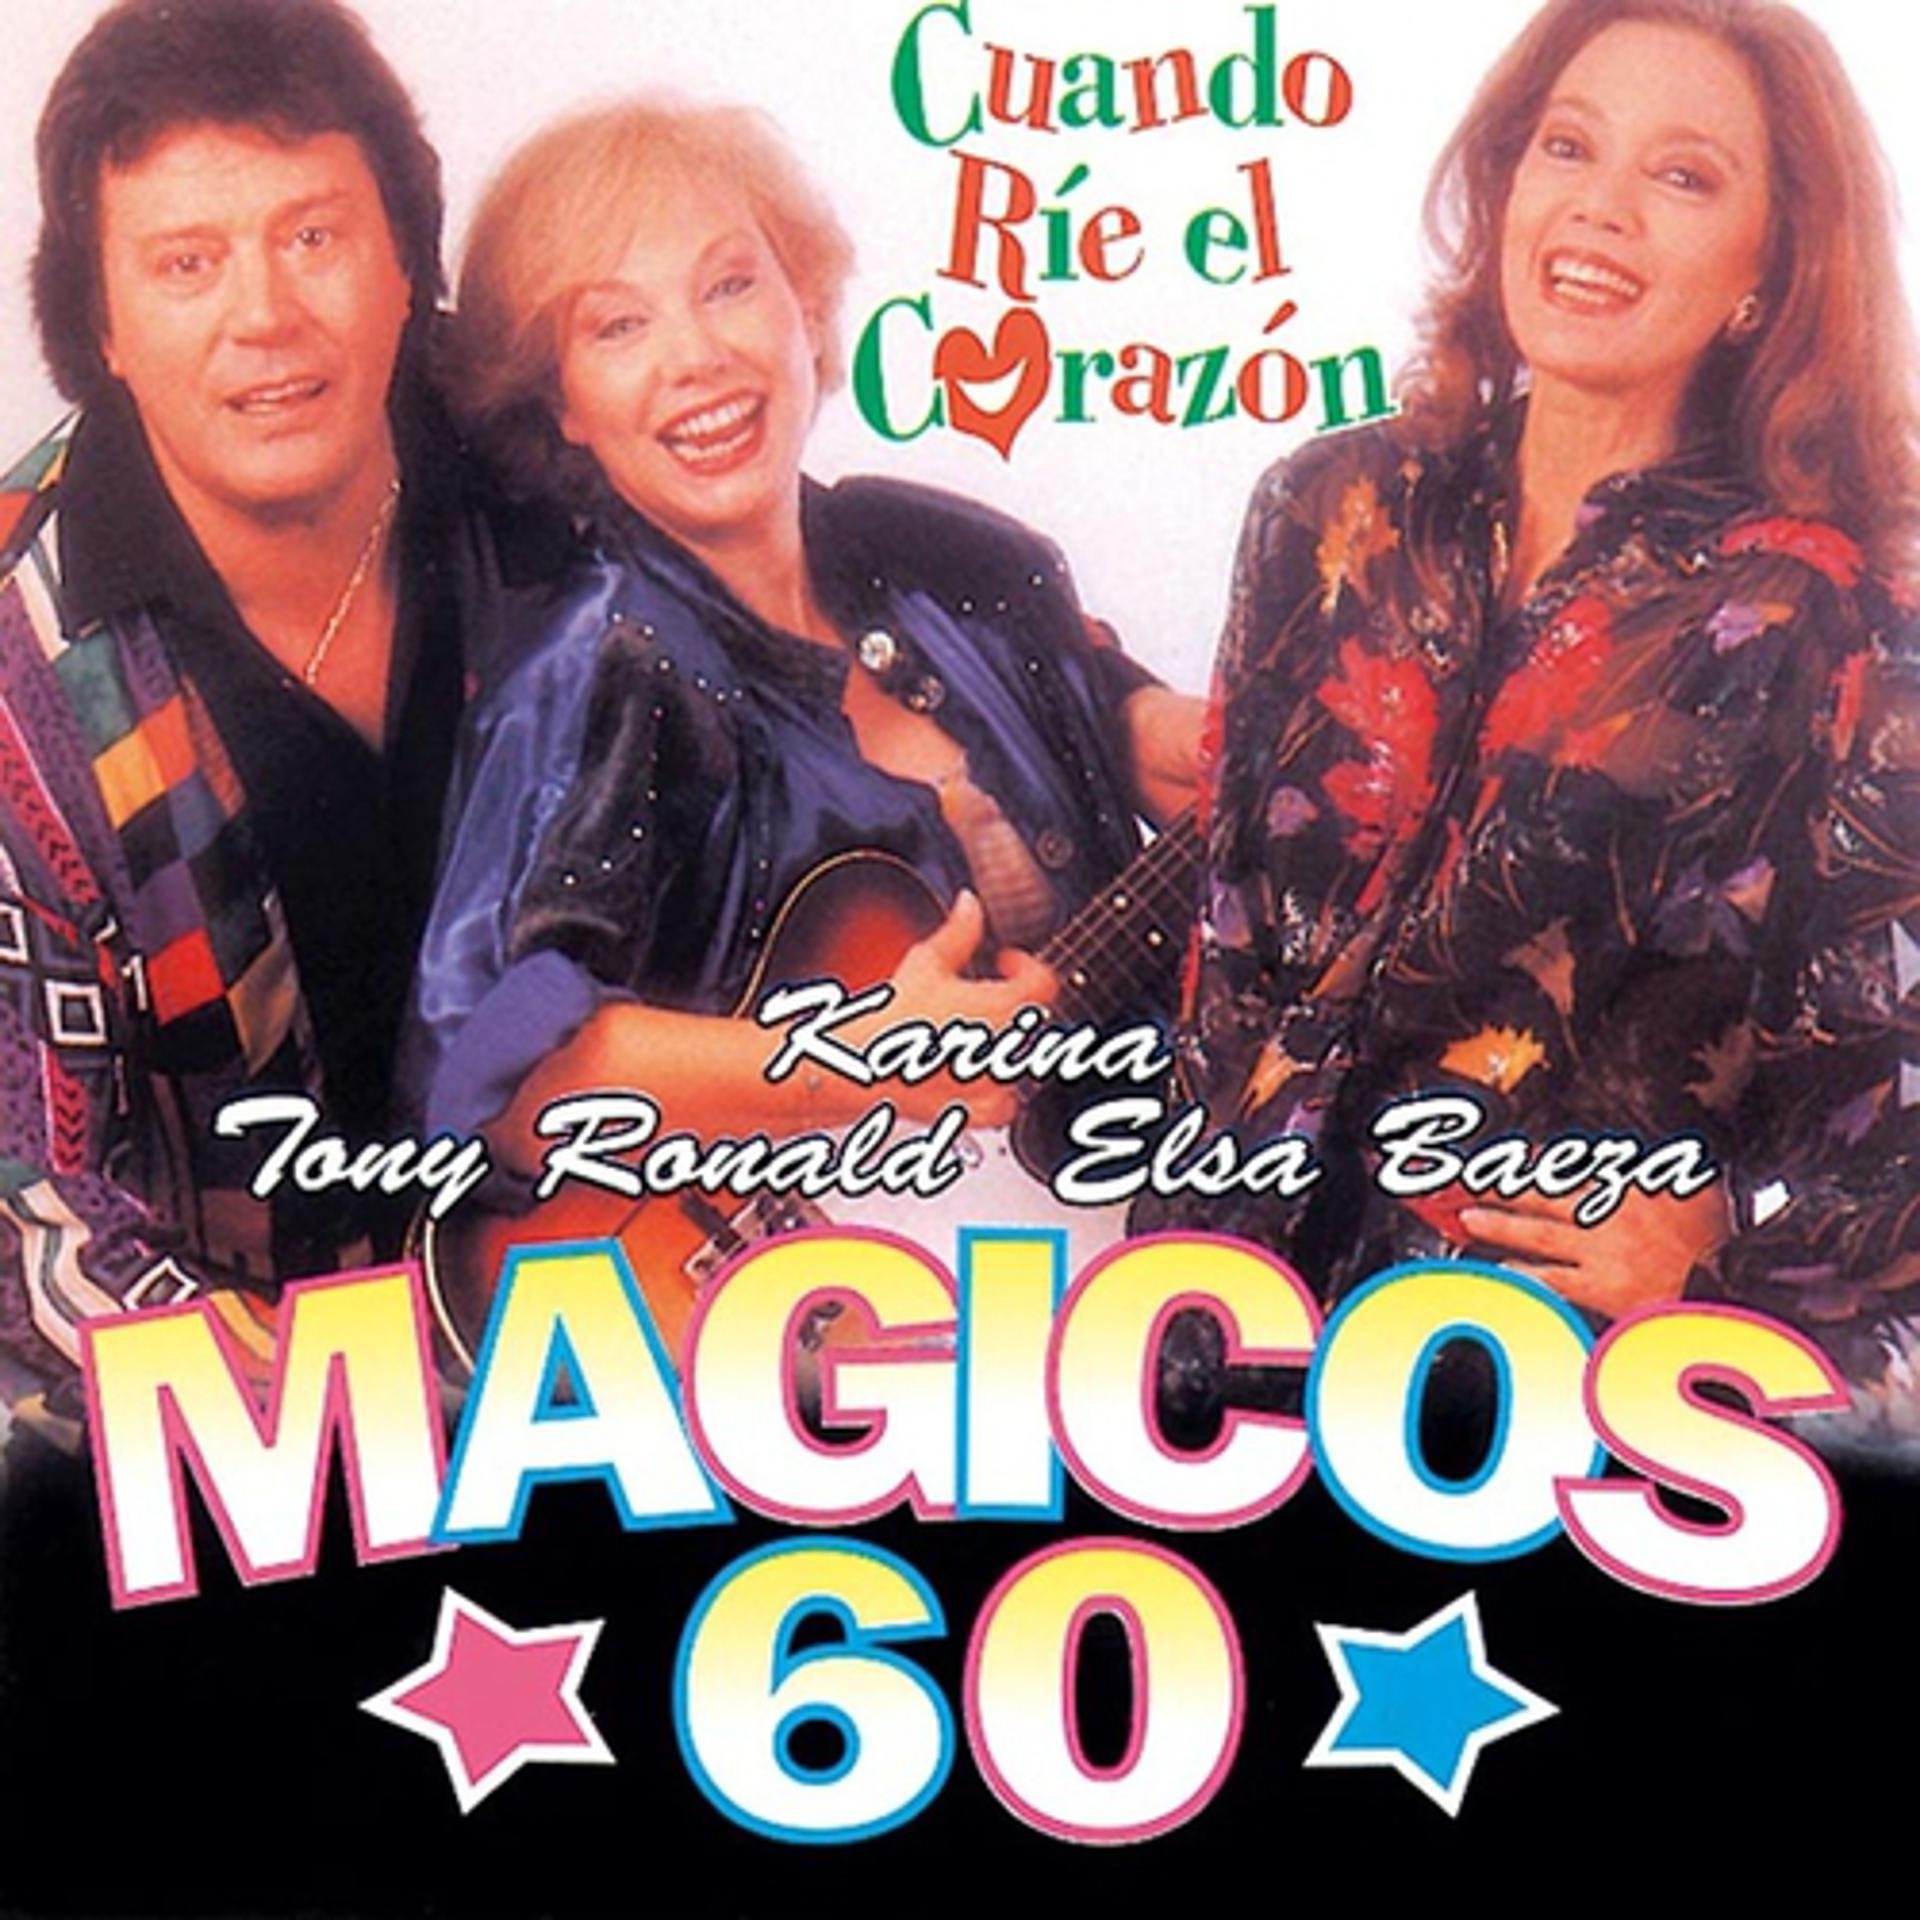 Постер альбома Magicos 60: Cuando Rie el Corazon